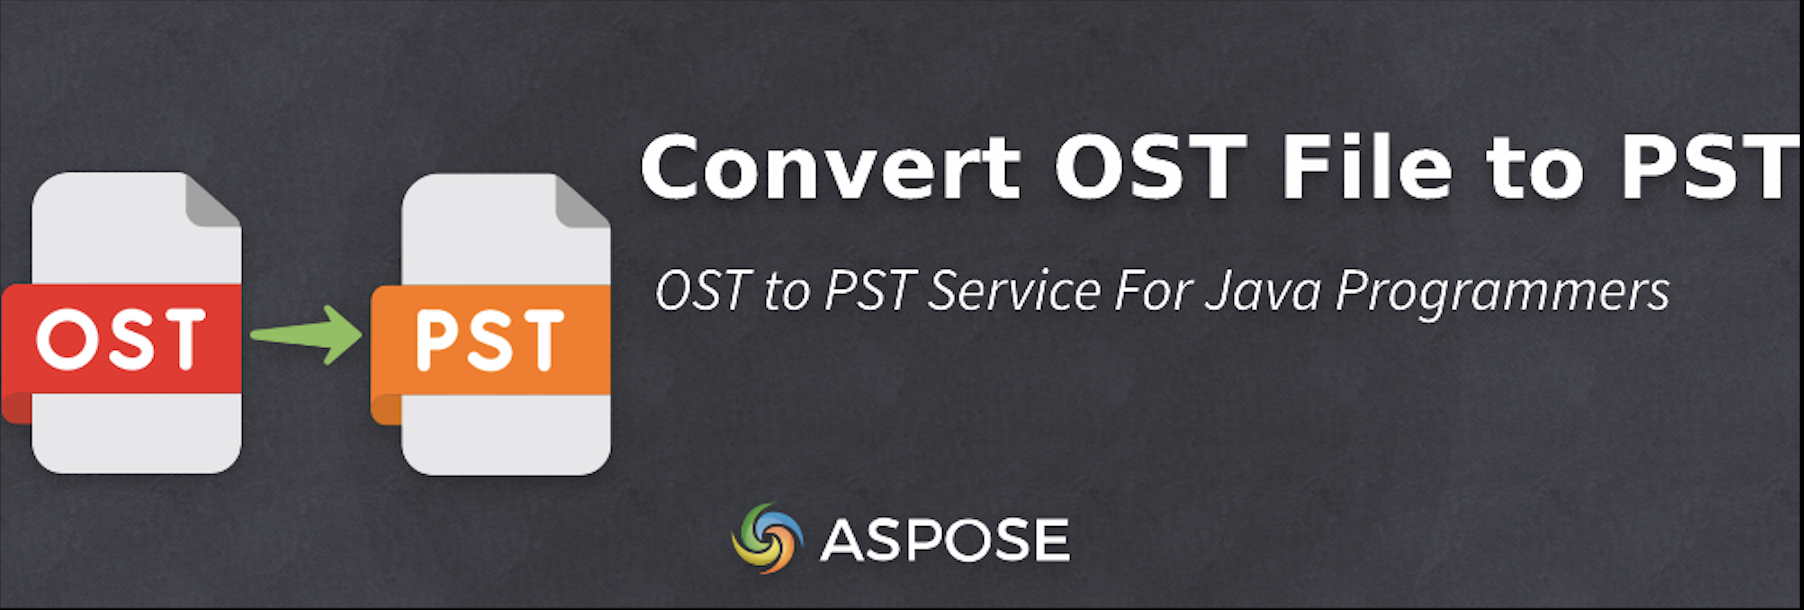 Перетворюйте OST-файли на PST у Java - безкоштовний конвертер OST у PST